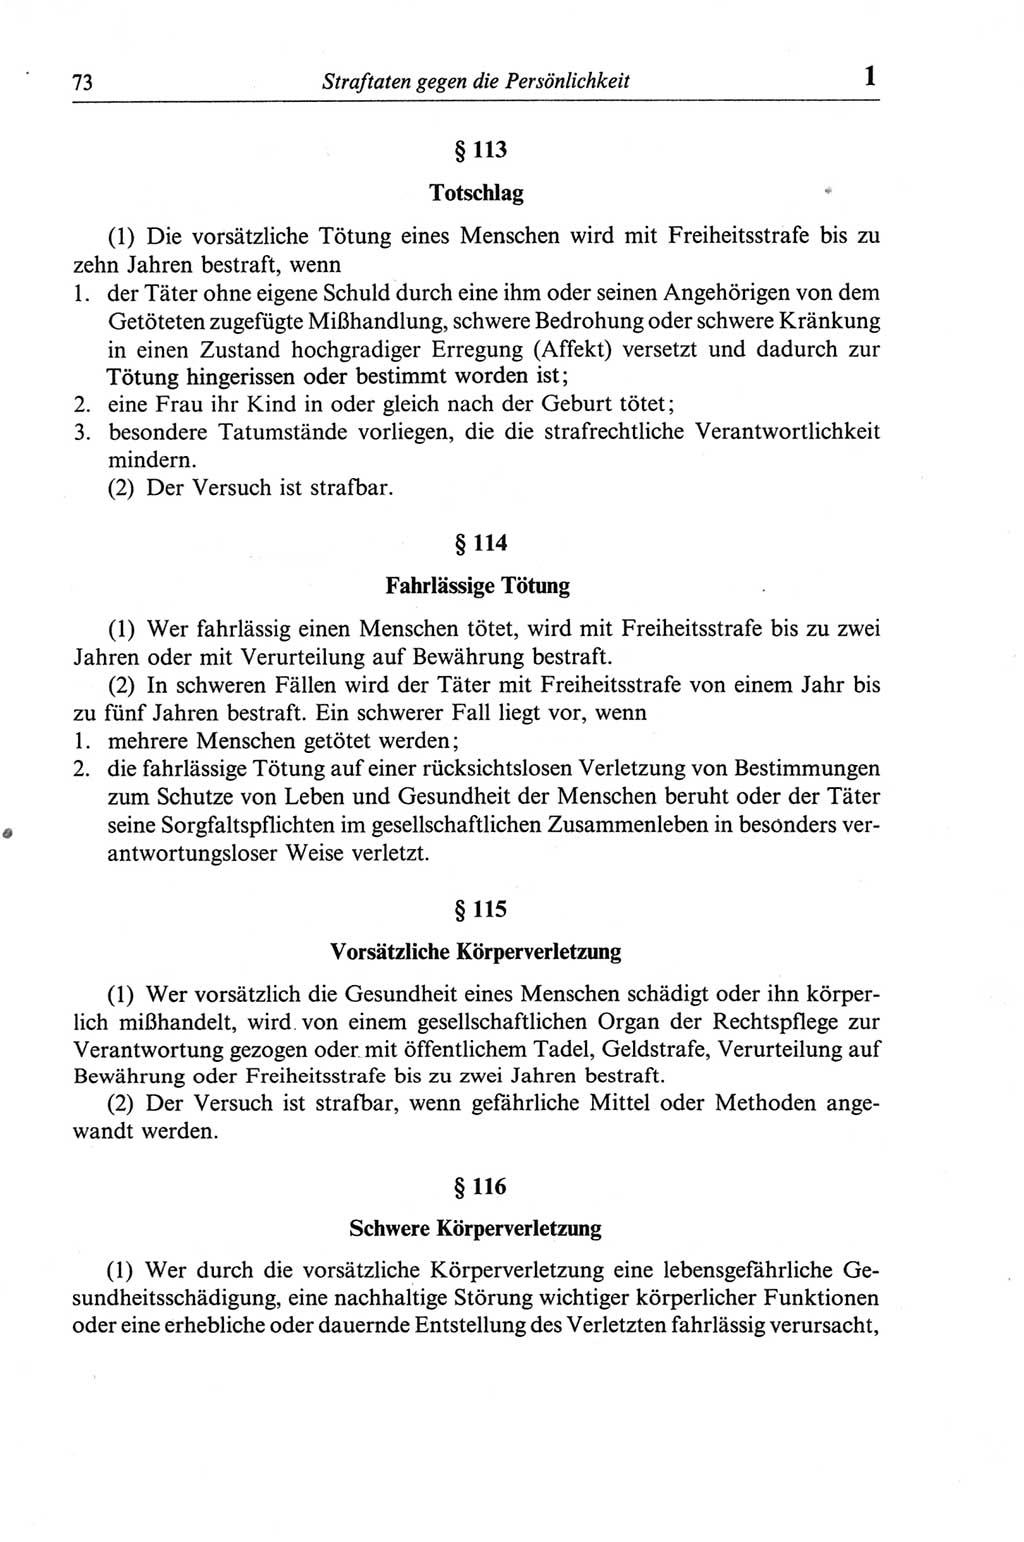 Strafgesetzbuch (StGB) der Deutschen Demokratischen Republik (DDR) und angrenzende Gesetze und Bestimmungen 1968, Seite 73 (StGB Ges. Best. DDR 1968, S. 73)